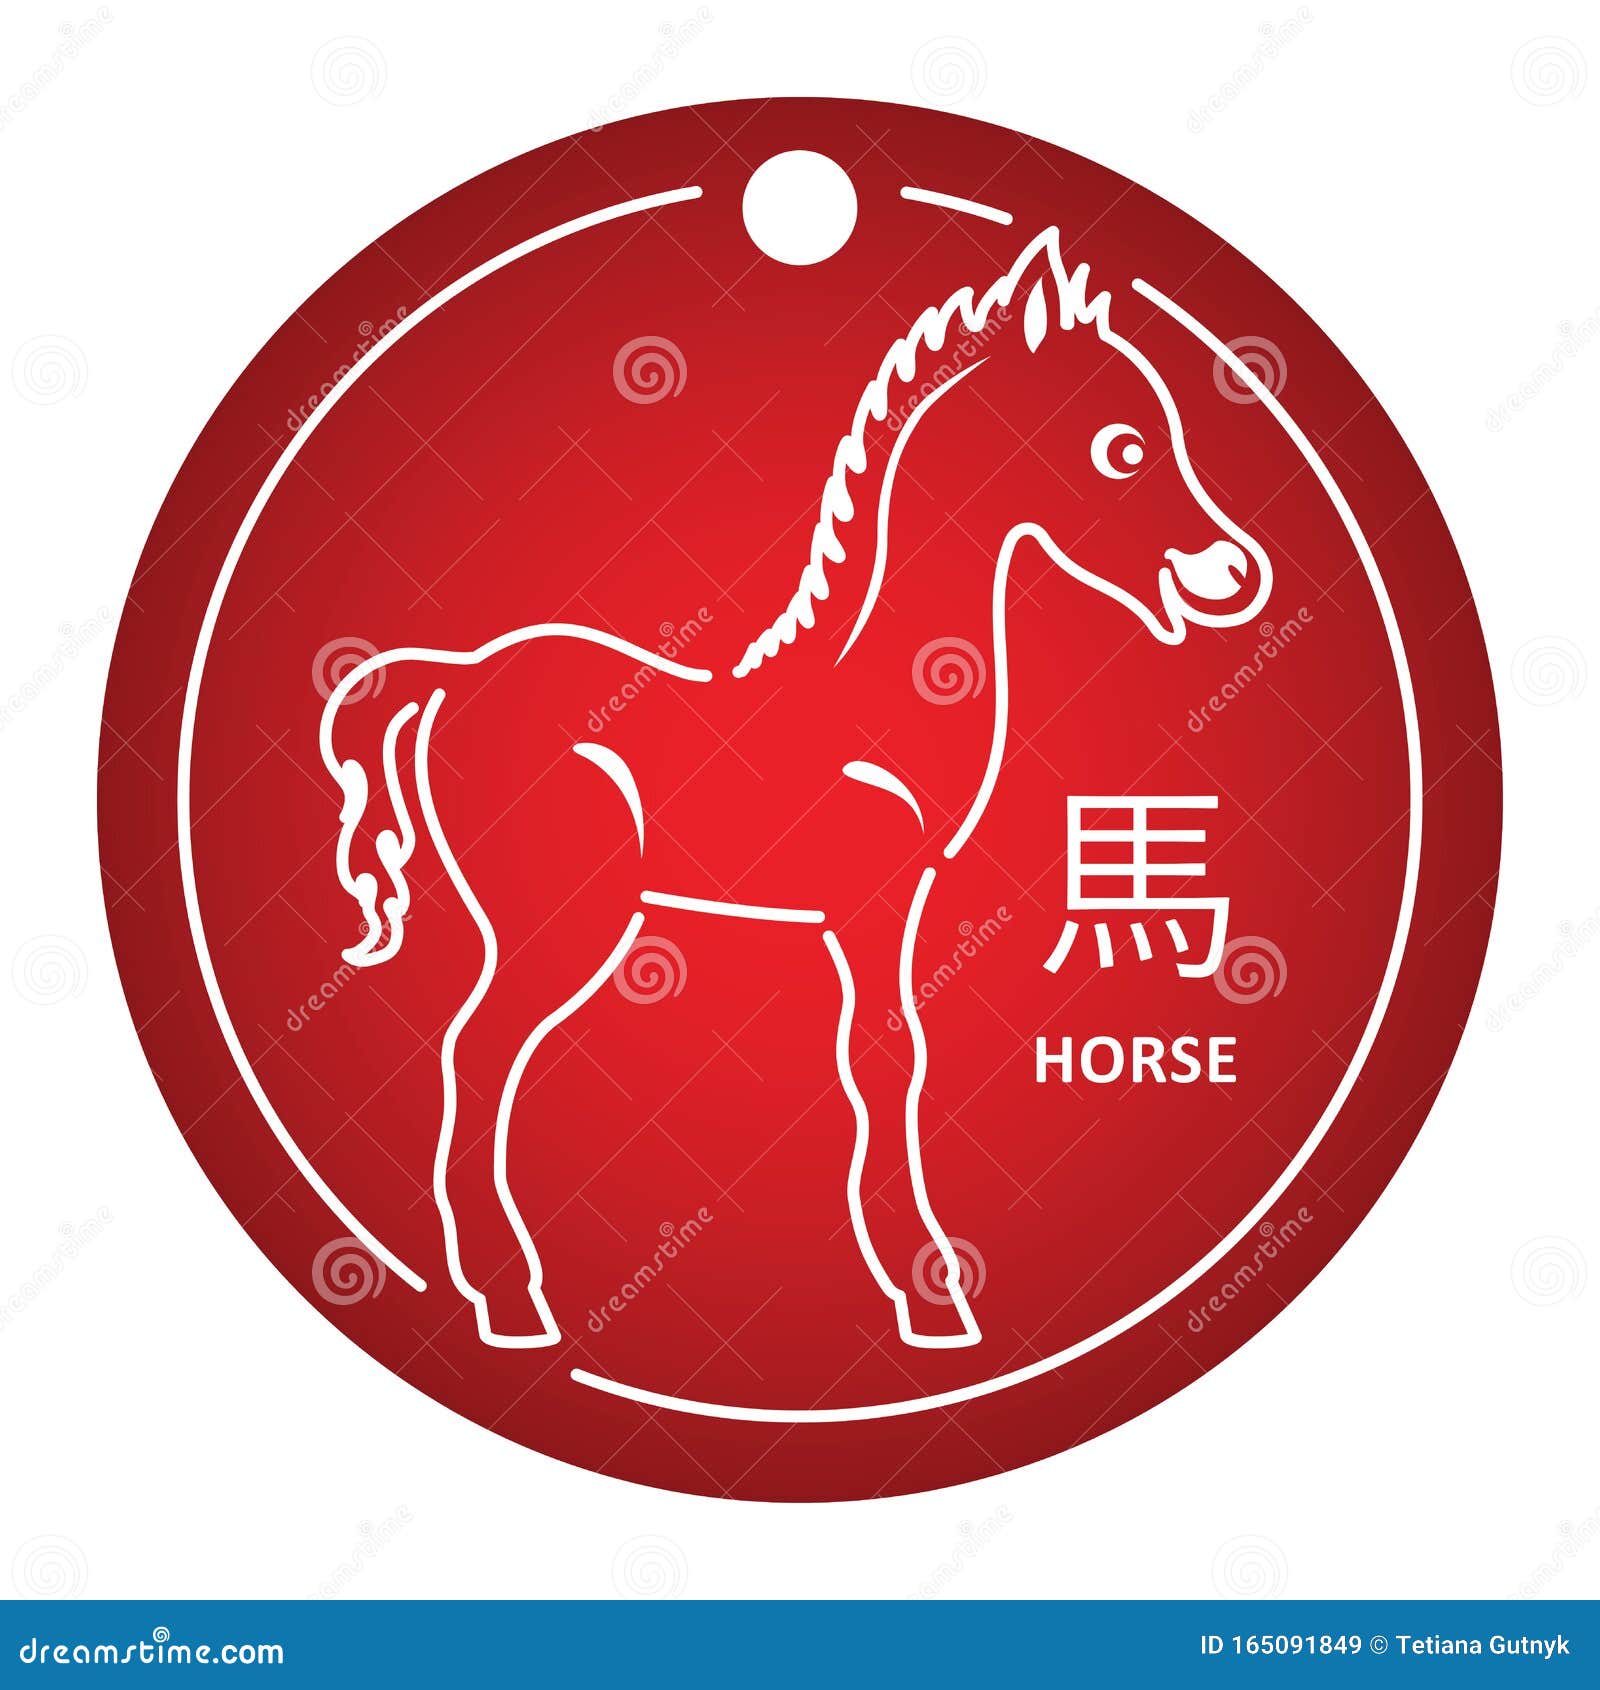 2015 год лошадь. Лошадь знак зодиака. Табличка для коня. Какие года знака лошадь. Город на гербе которого изображен конь на Красном фоне 5 букв.